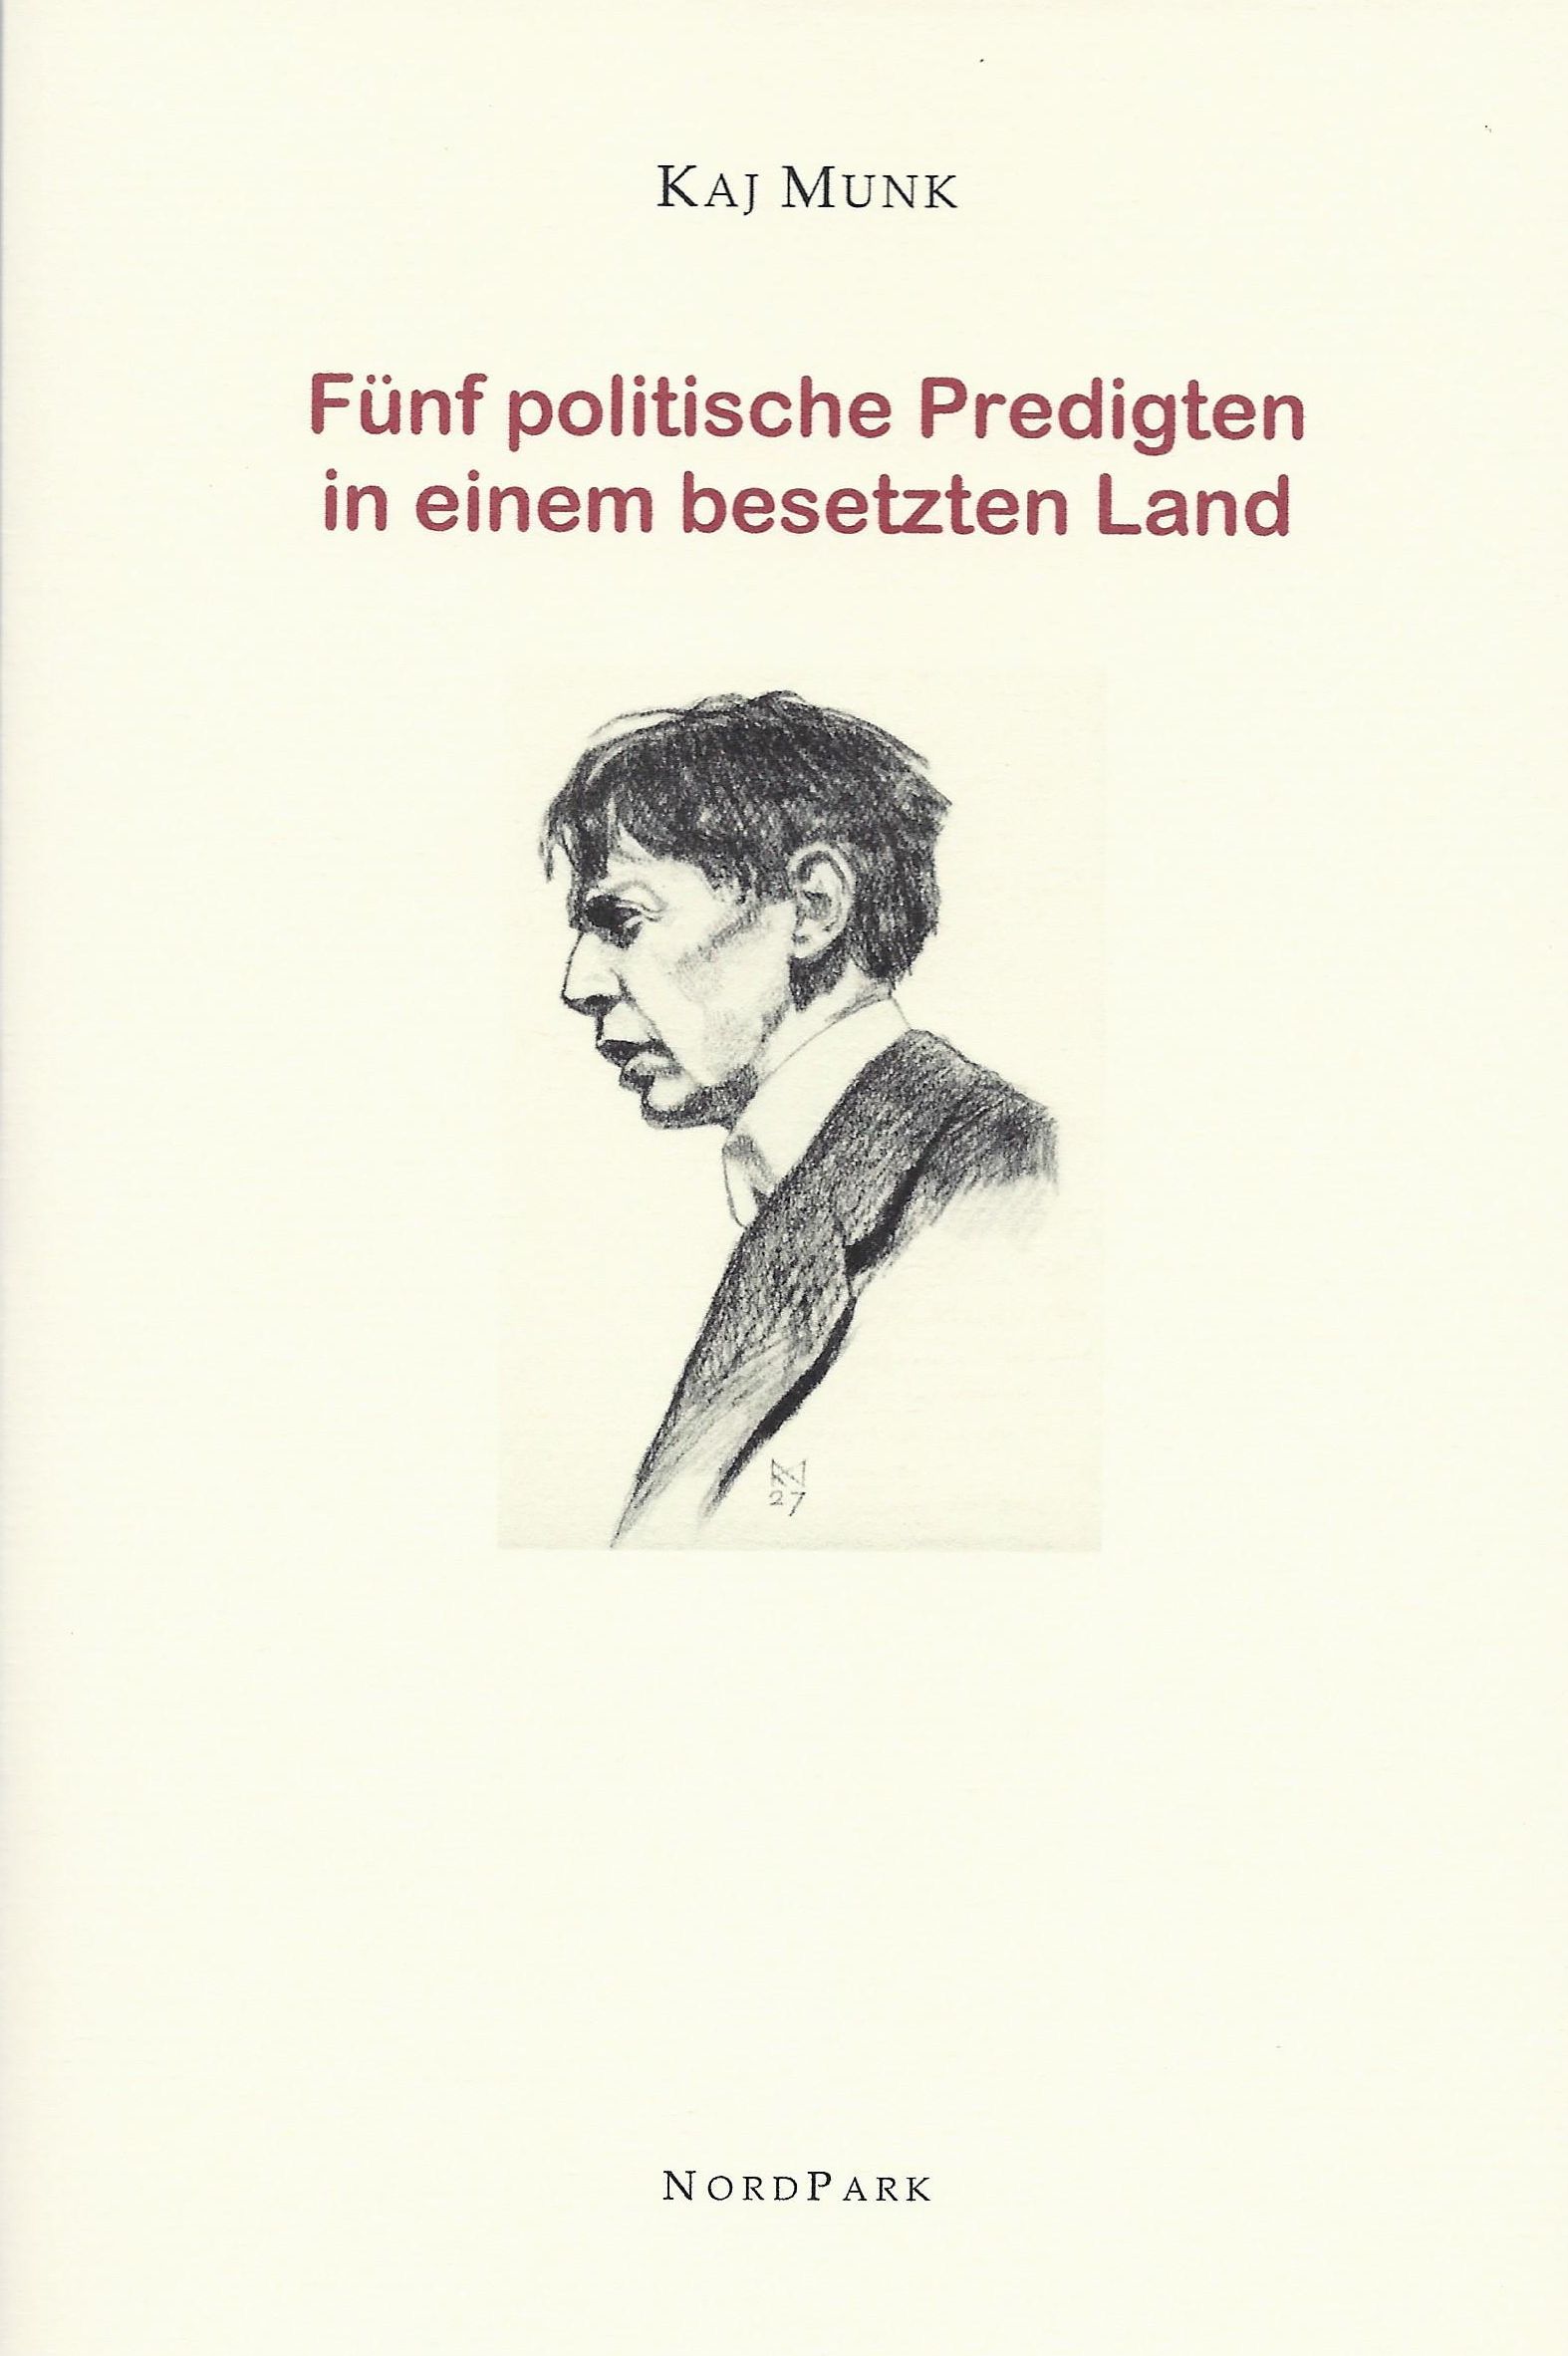 Die Besonderen Hefte: cover-Munk-fuenf-predigten.jpg